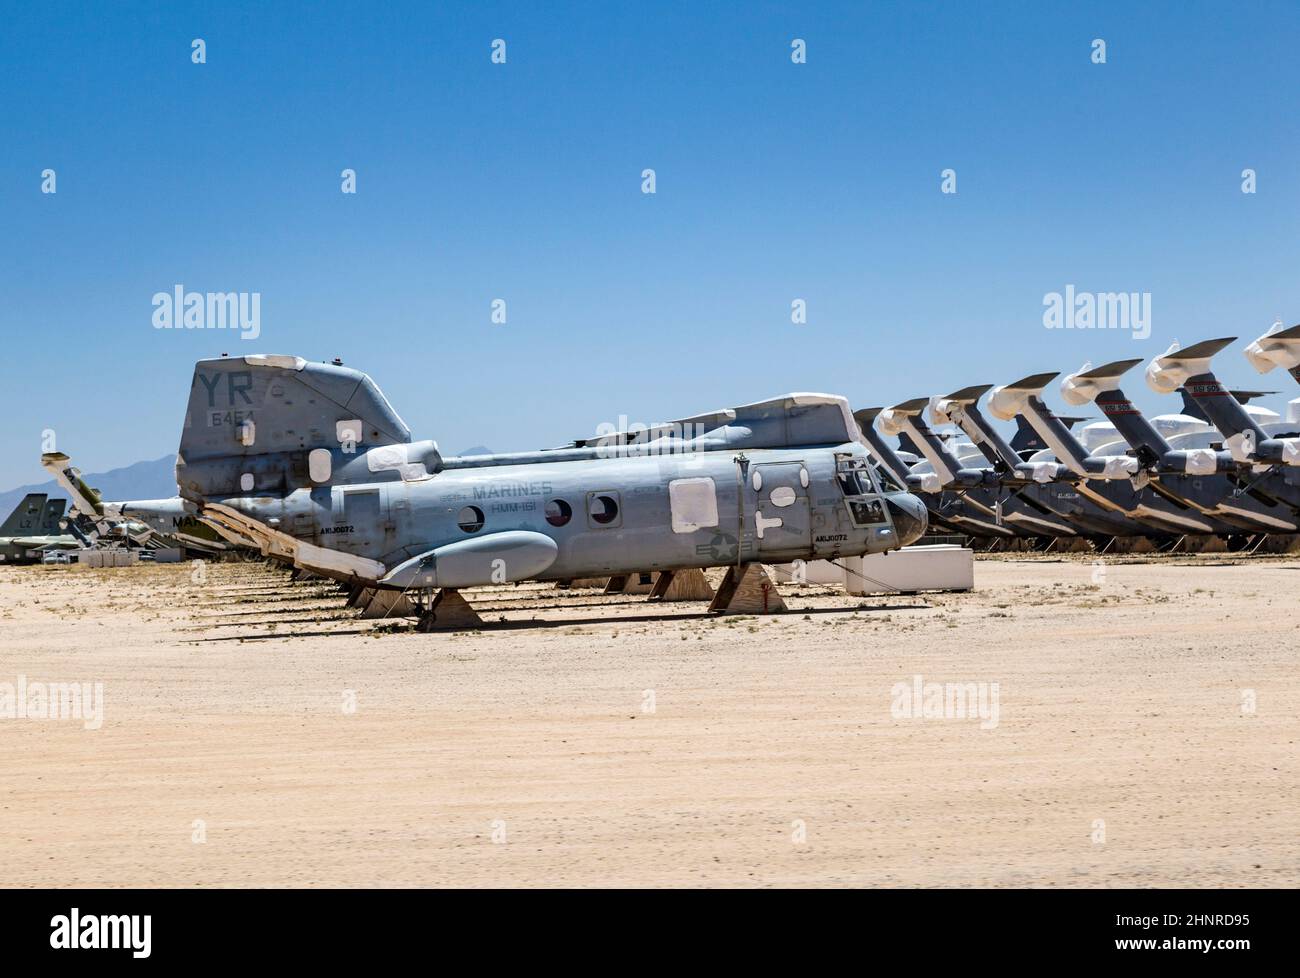 Davis-Monthan Air Force Base AMARG boneyard in Tucson, Arizona Stock Photo